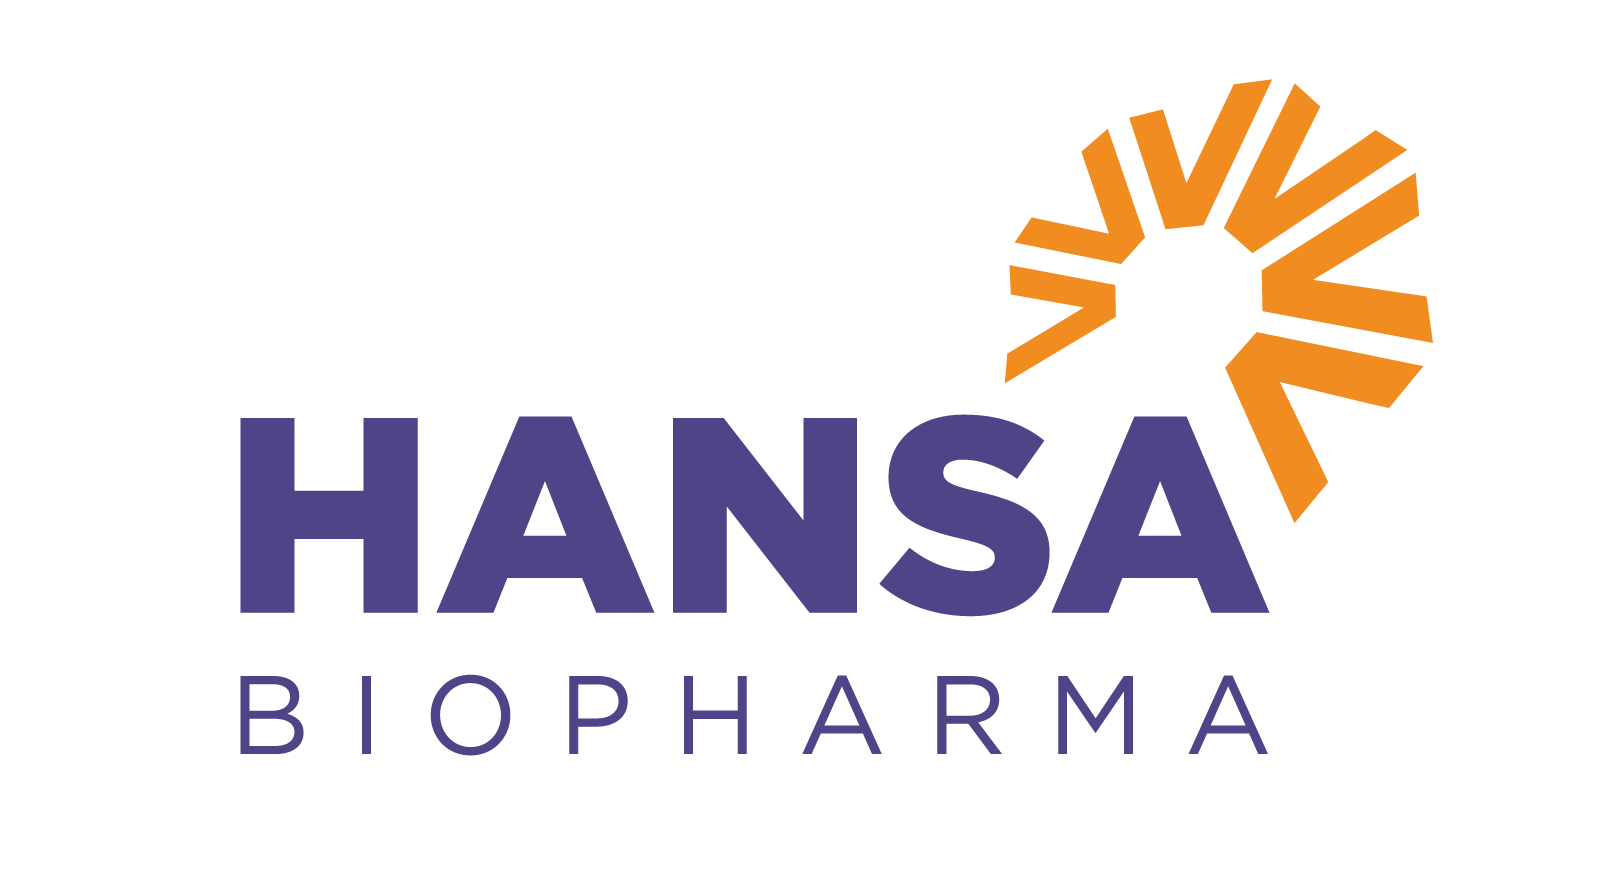 Hansa Biopharma